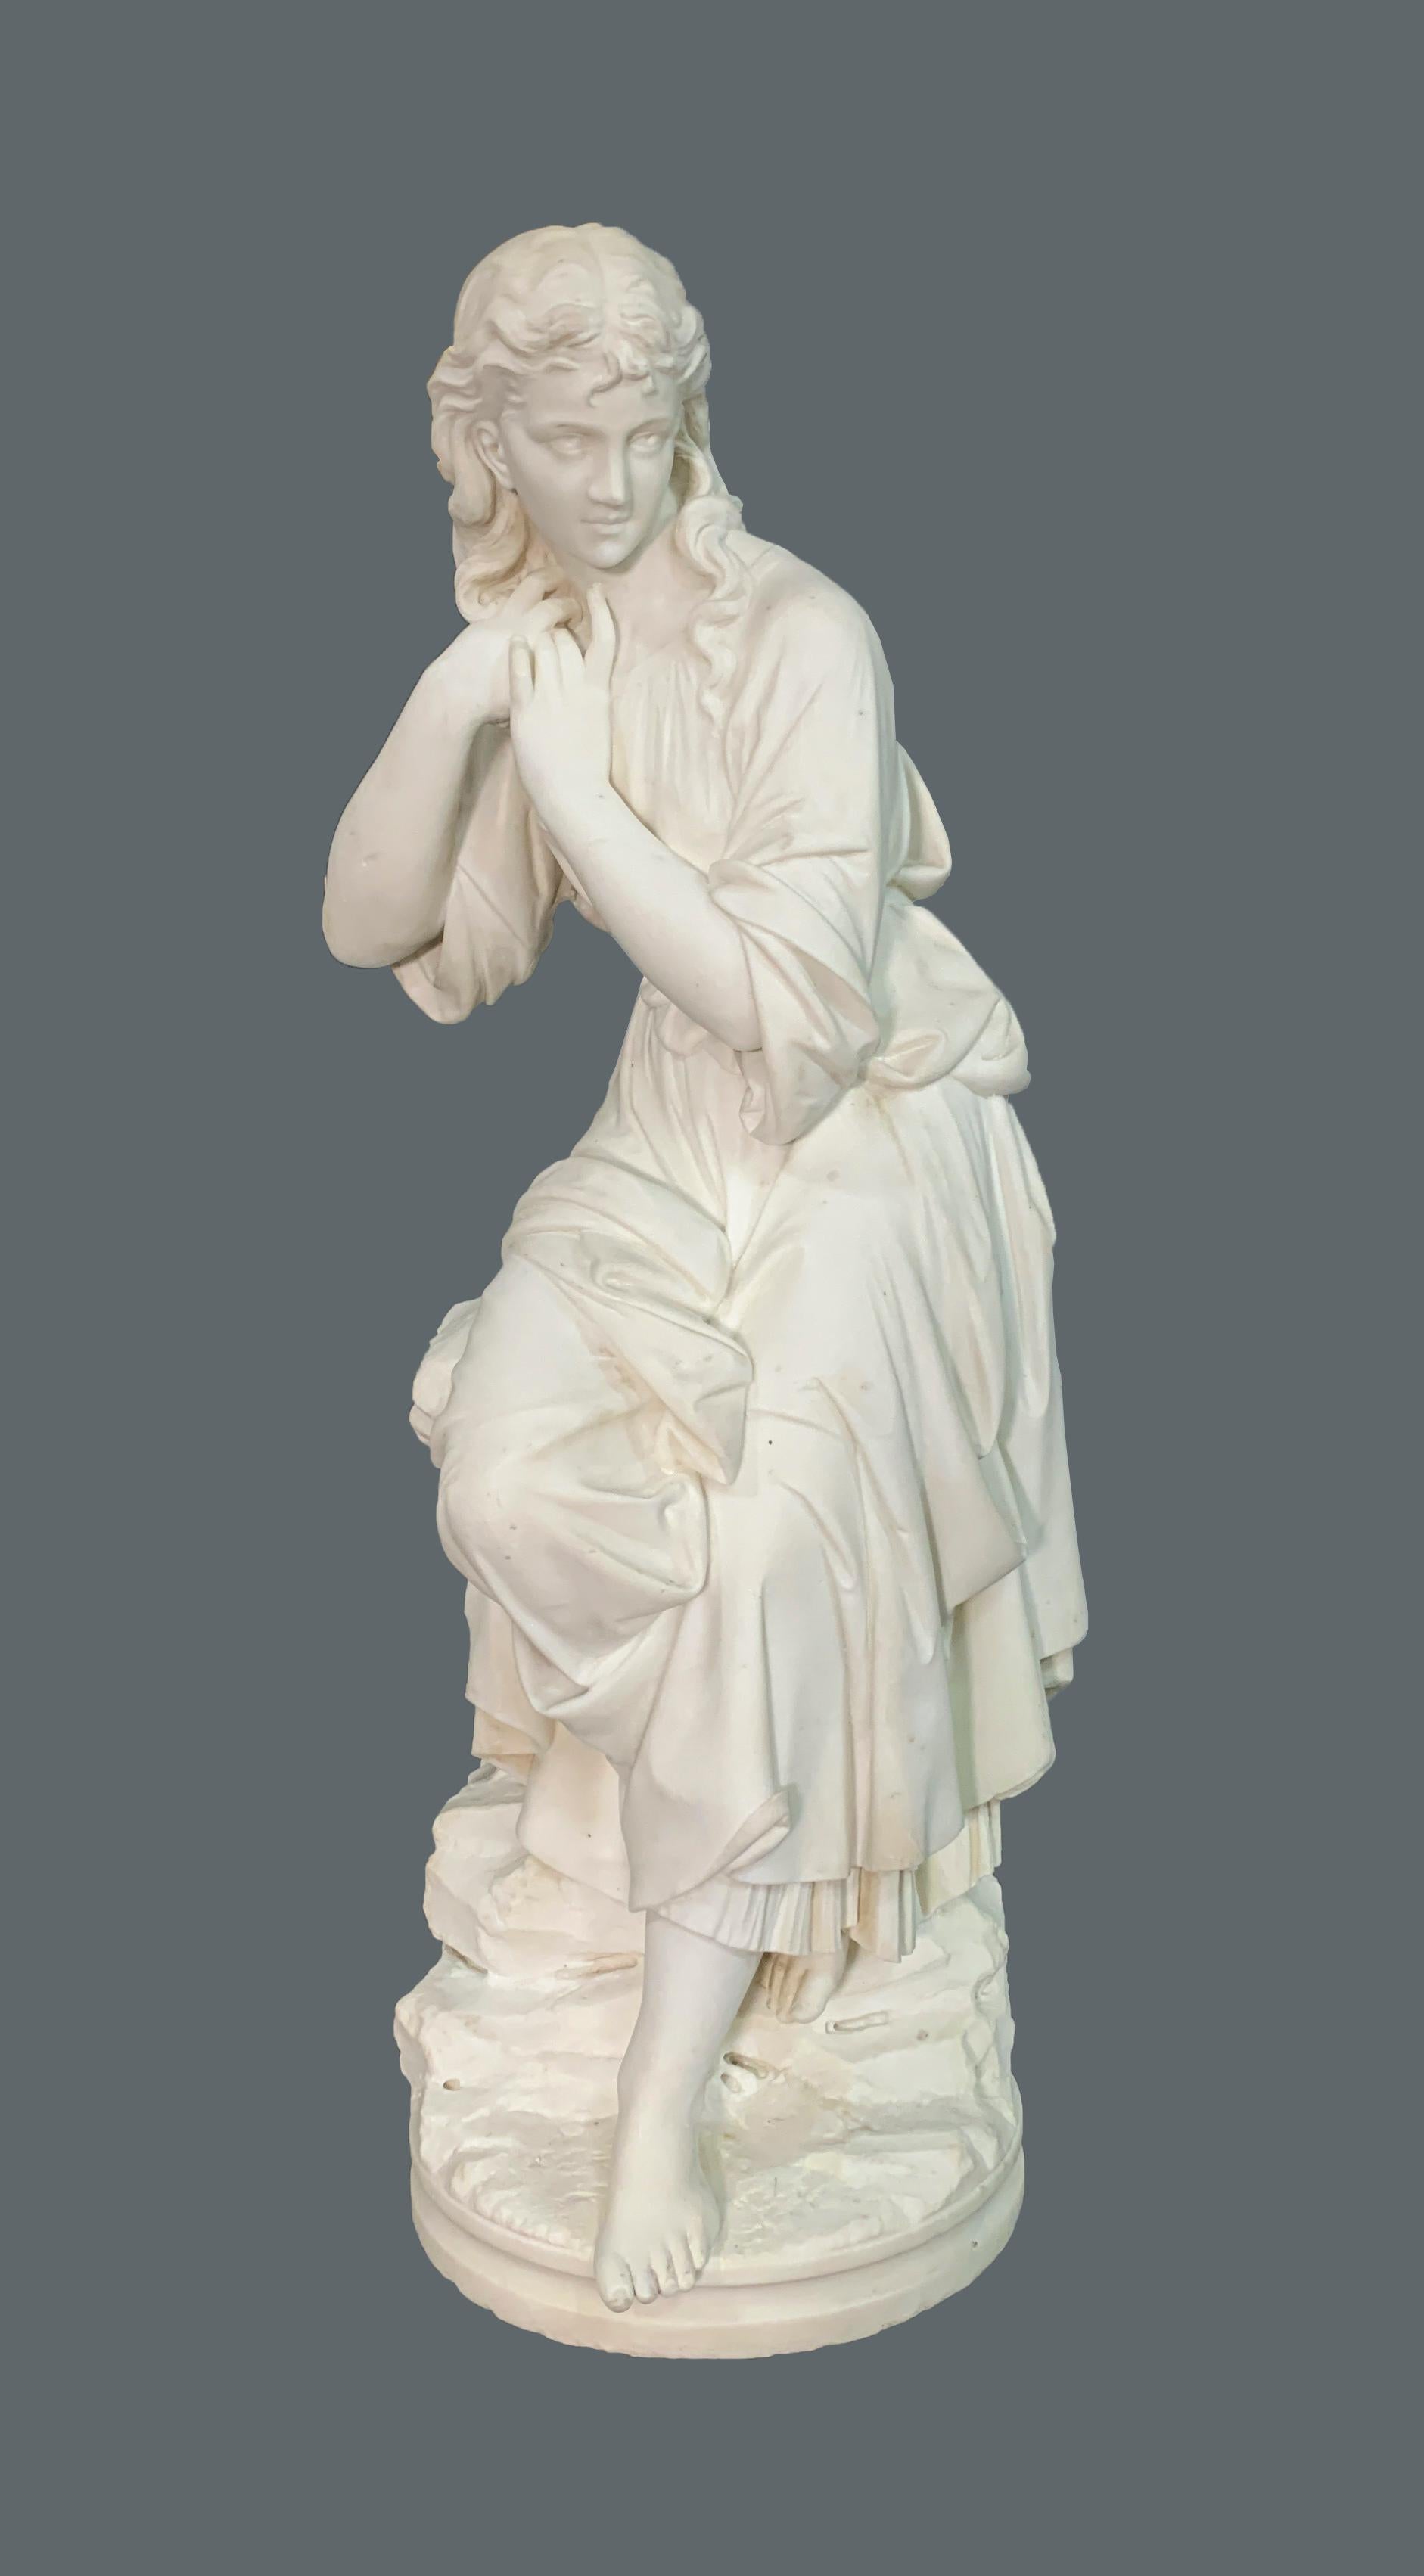 Diese prächtige italienische Marmorfigur stellt eine Frau dar, die auf einem Stein sitzt,
Die Details auf ihrem Kleid zeigen, wie es sorglos an ihren Füßen vorbeifließt, während sie auf einem kunstvoll gestalteten Felsen ruht. Sie bürstet sich